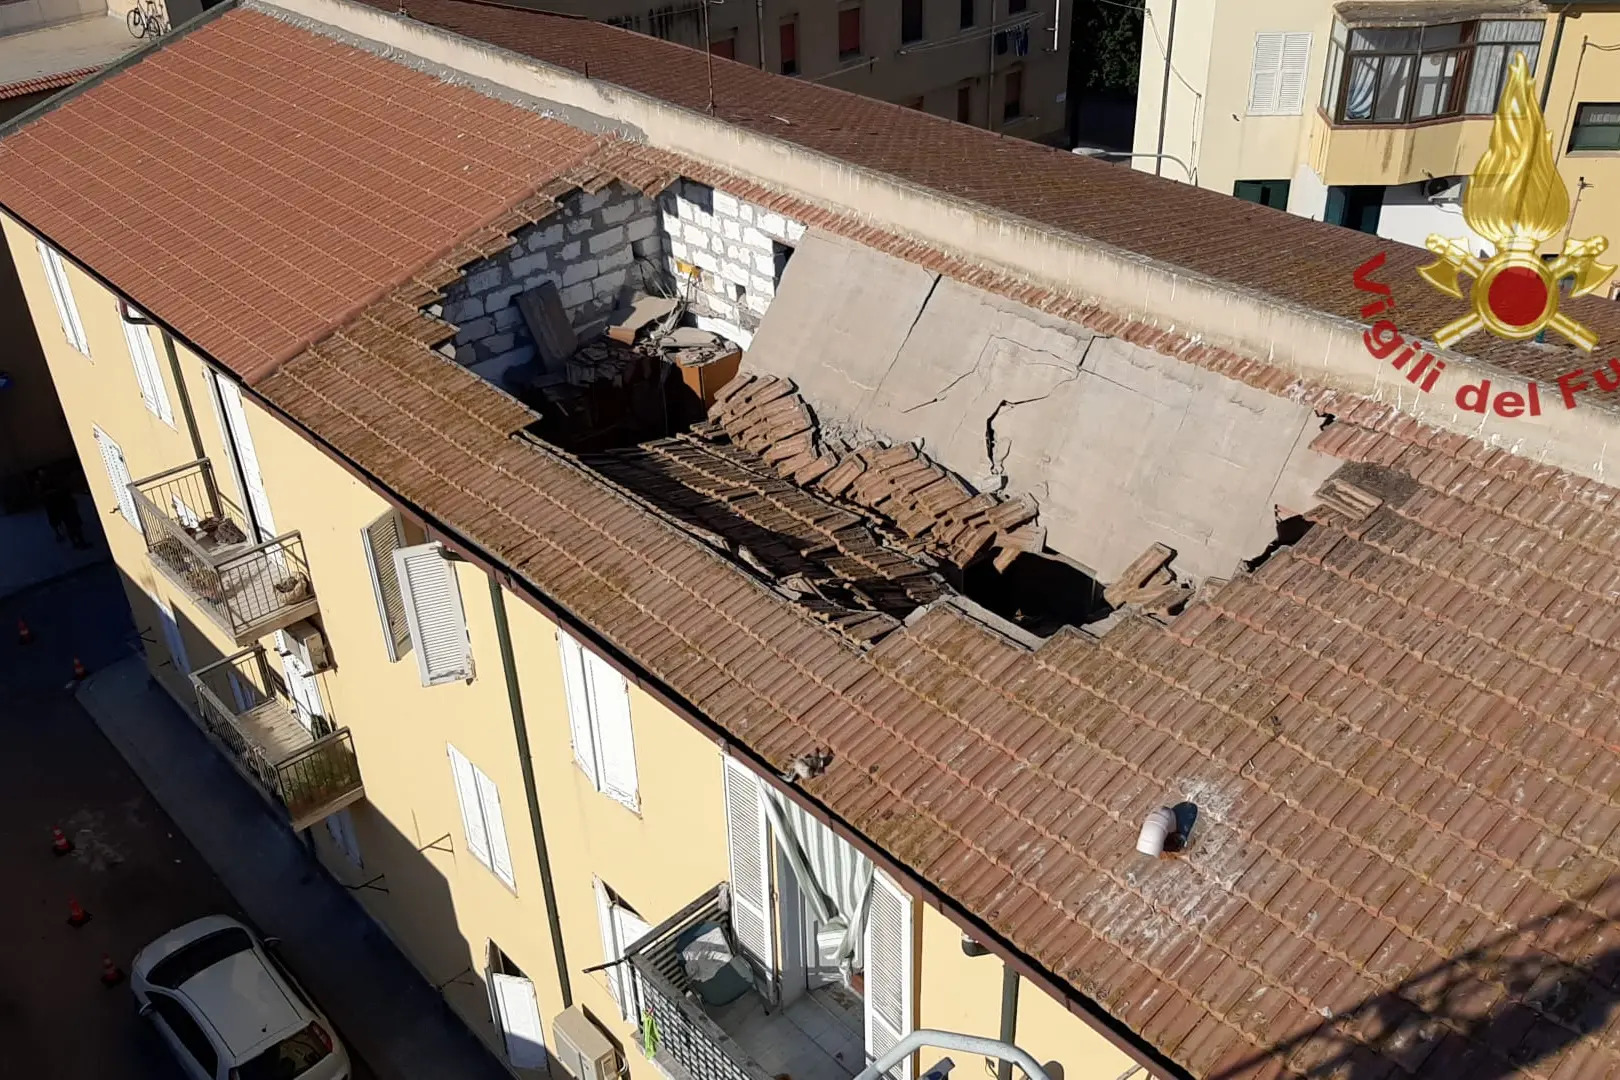 Crollano tetto e solaio di un'abitazione, paura a Porto Torres (foto vigili del fuoco)